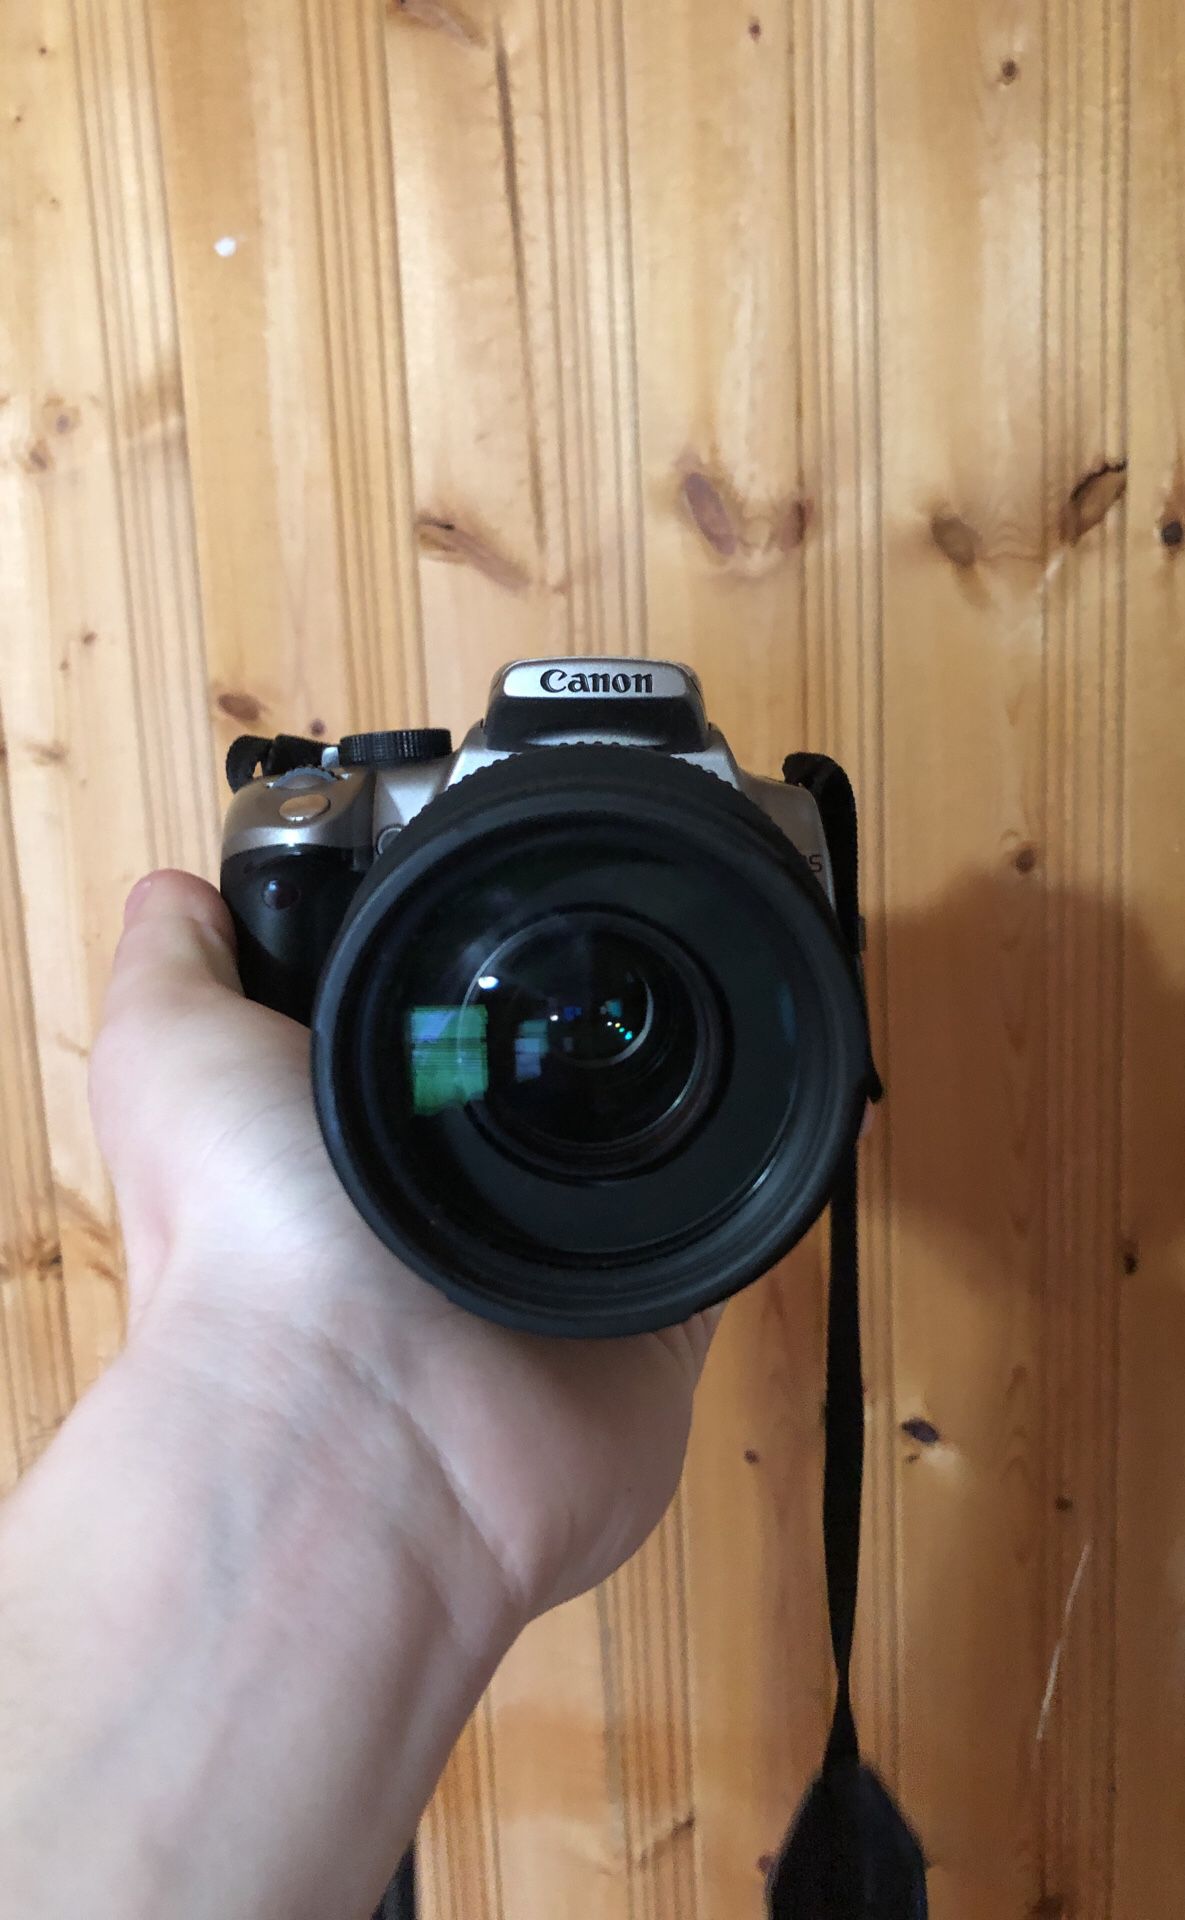 Canon camera with lense